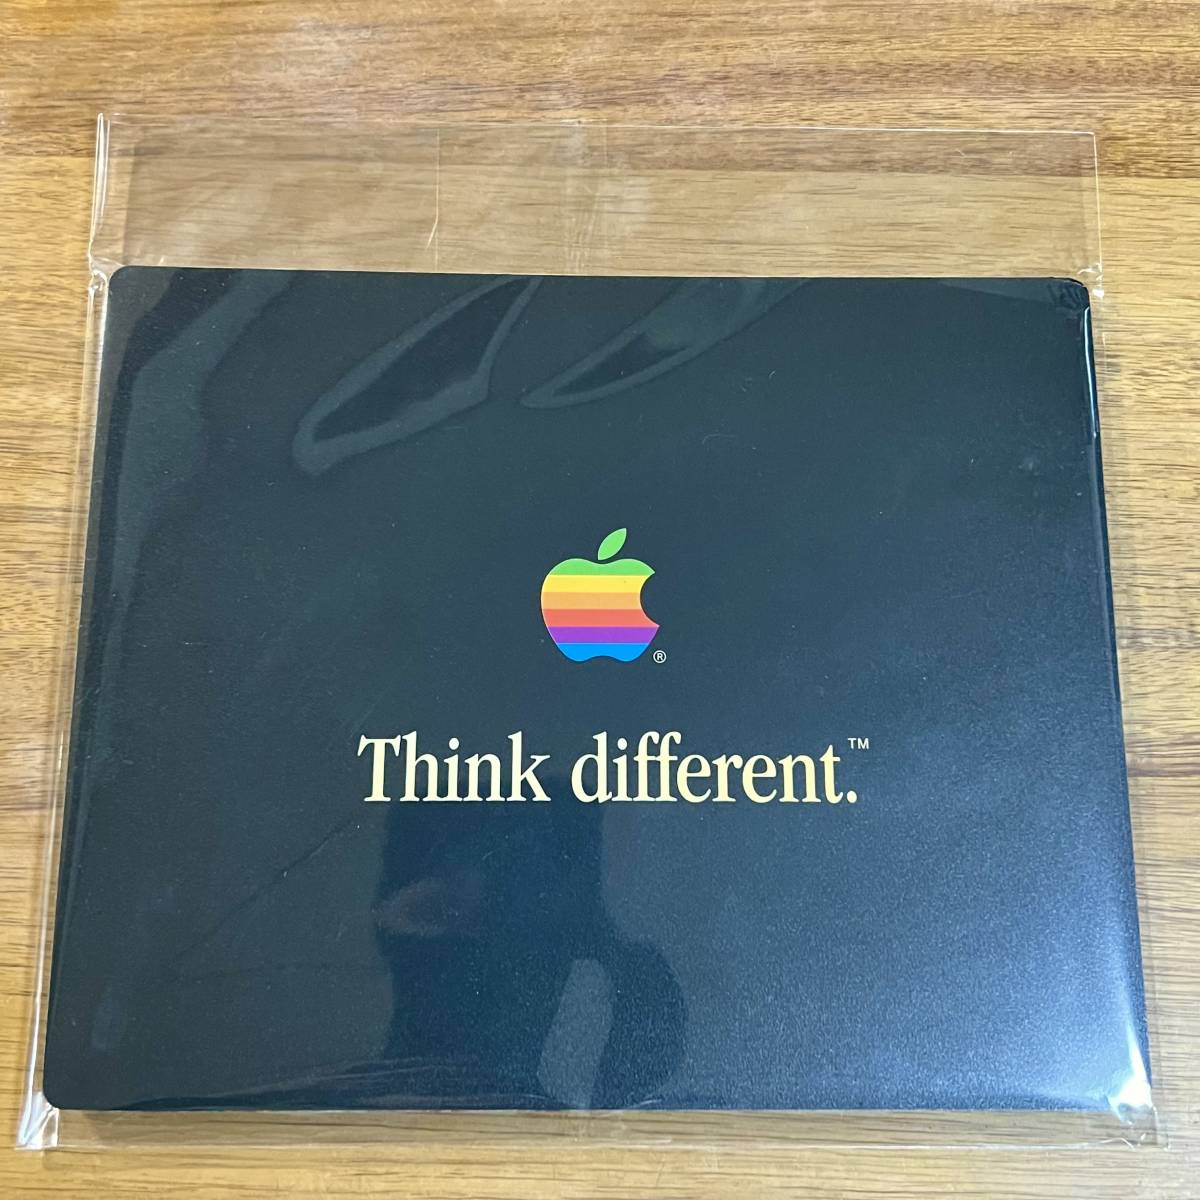  レア Think Different Apple Computer マウスパッド アップル コンピューター レインボー ロゴ 非売品 ノベルティー 販促_画像1